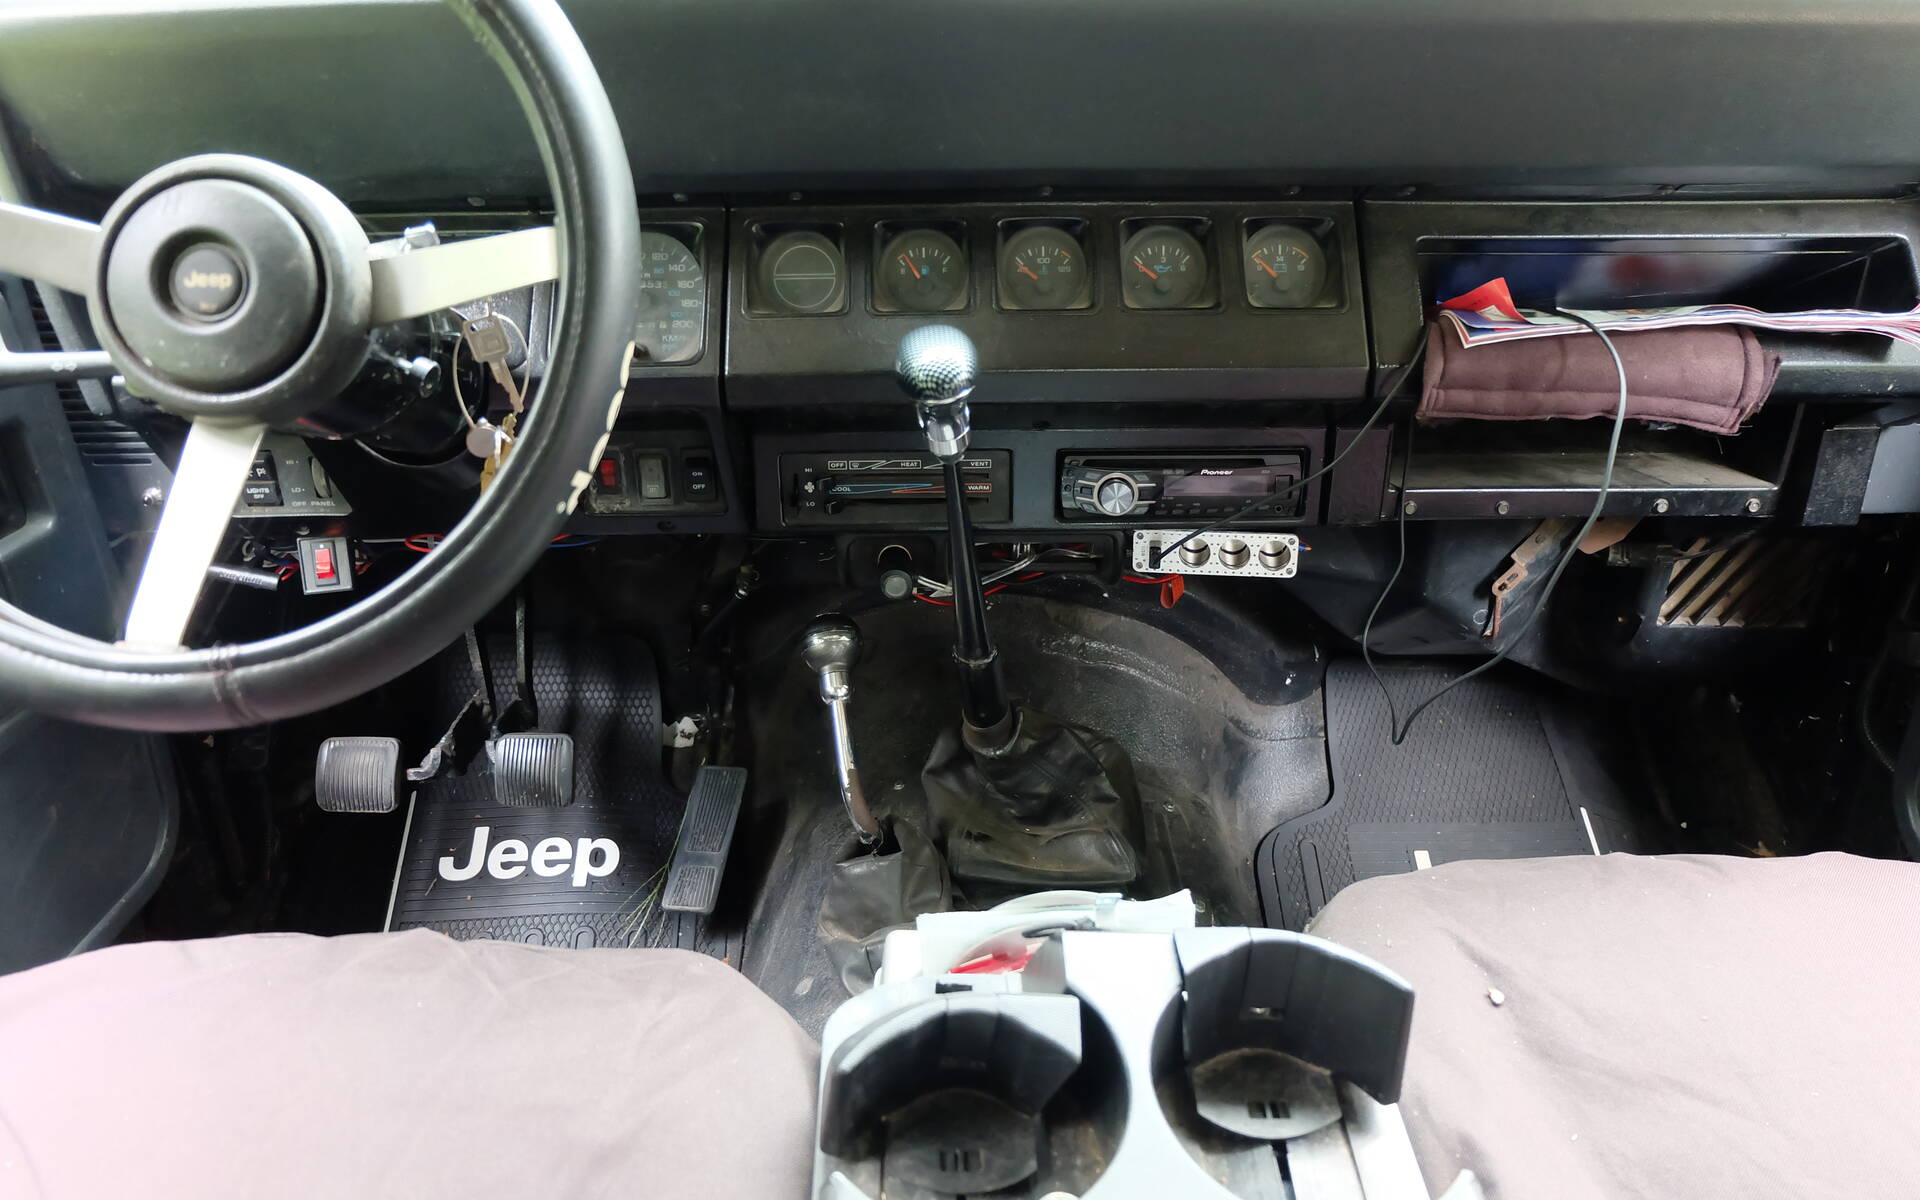 Le Jeep Wrangler d’hier à aujourd’hui 498217-le-jeep-wrangler-d-hier-a-aujourd-hui